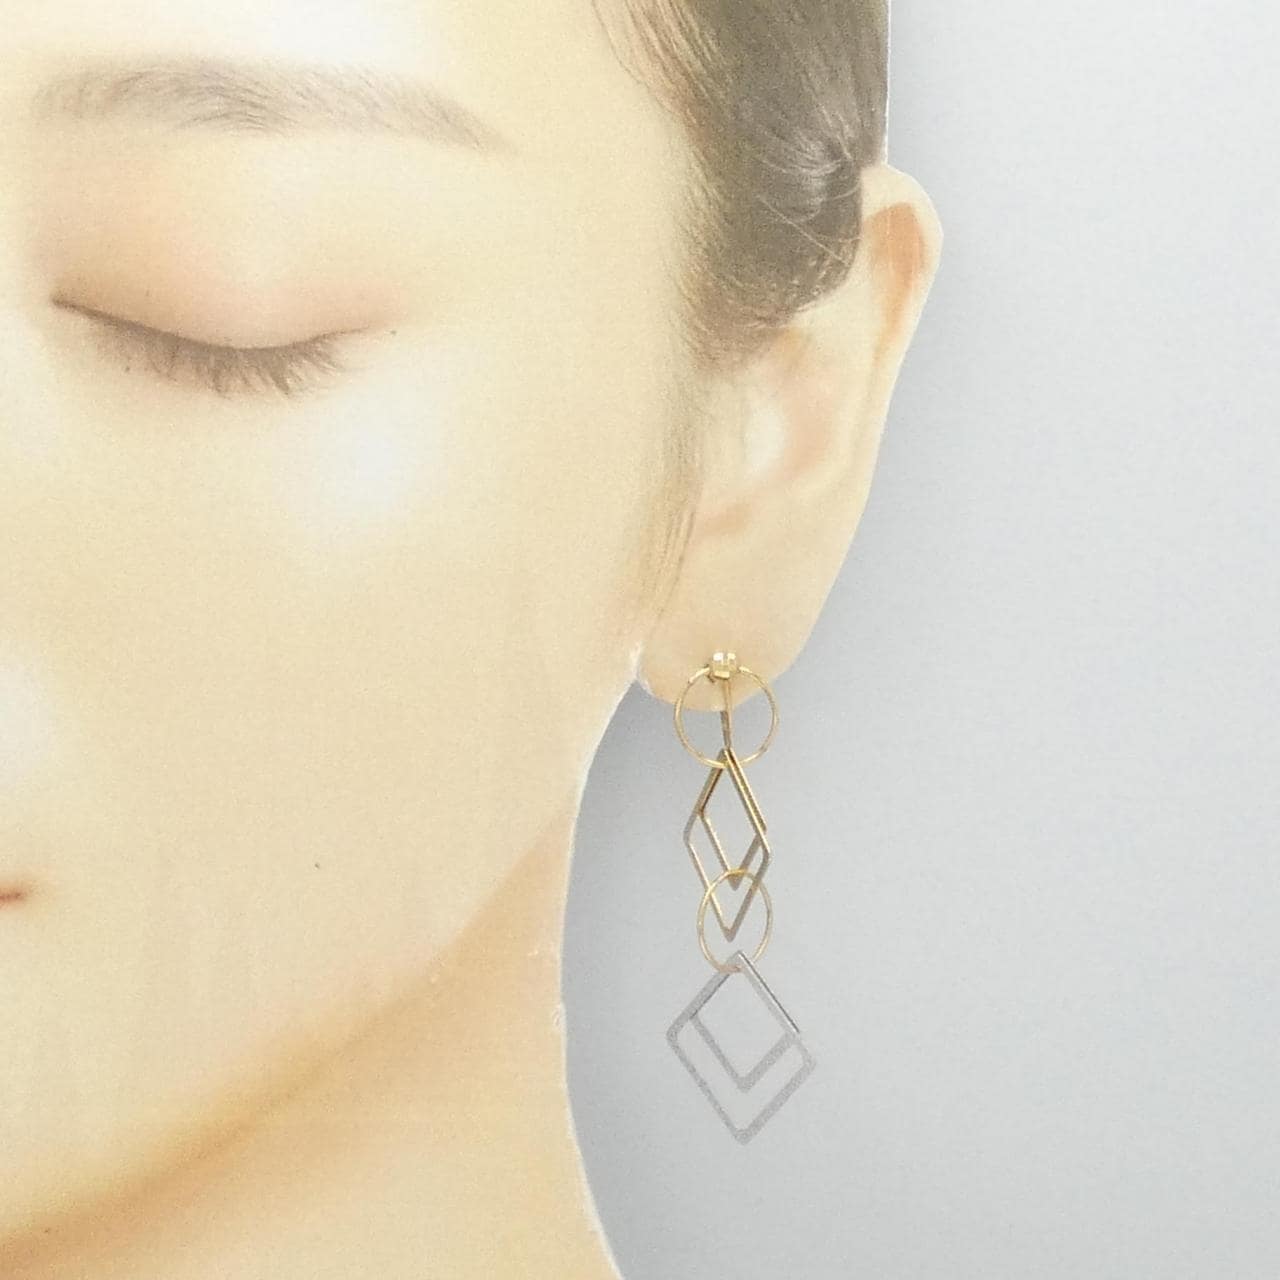 UNOAERRE K18YG/K18WG earrings